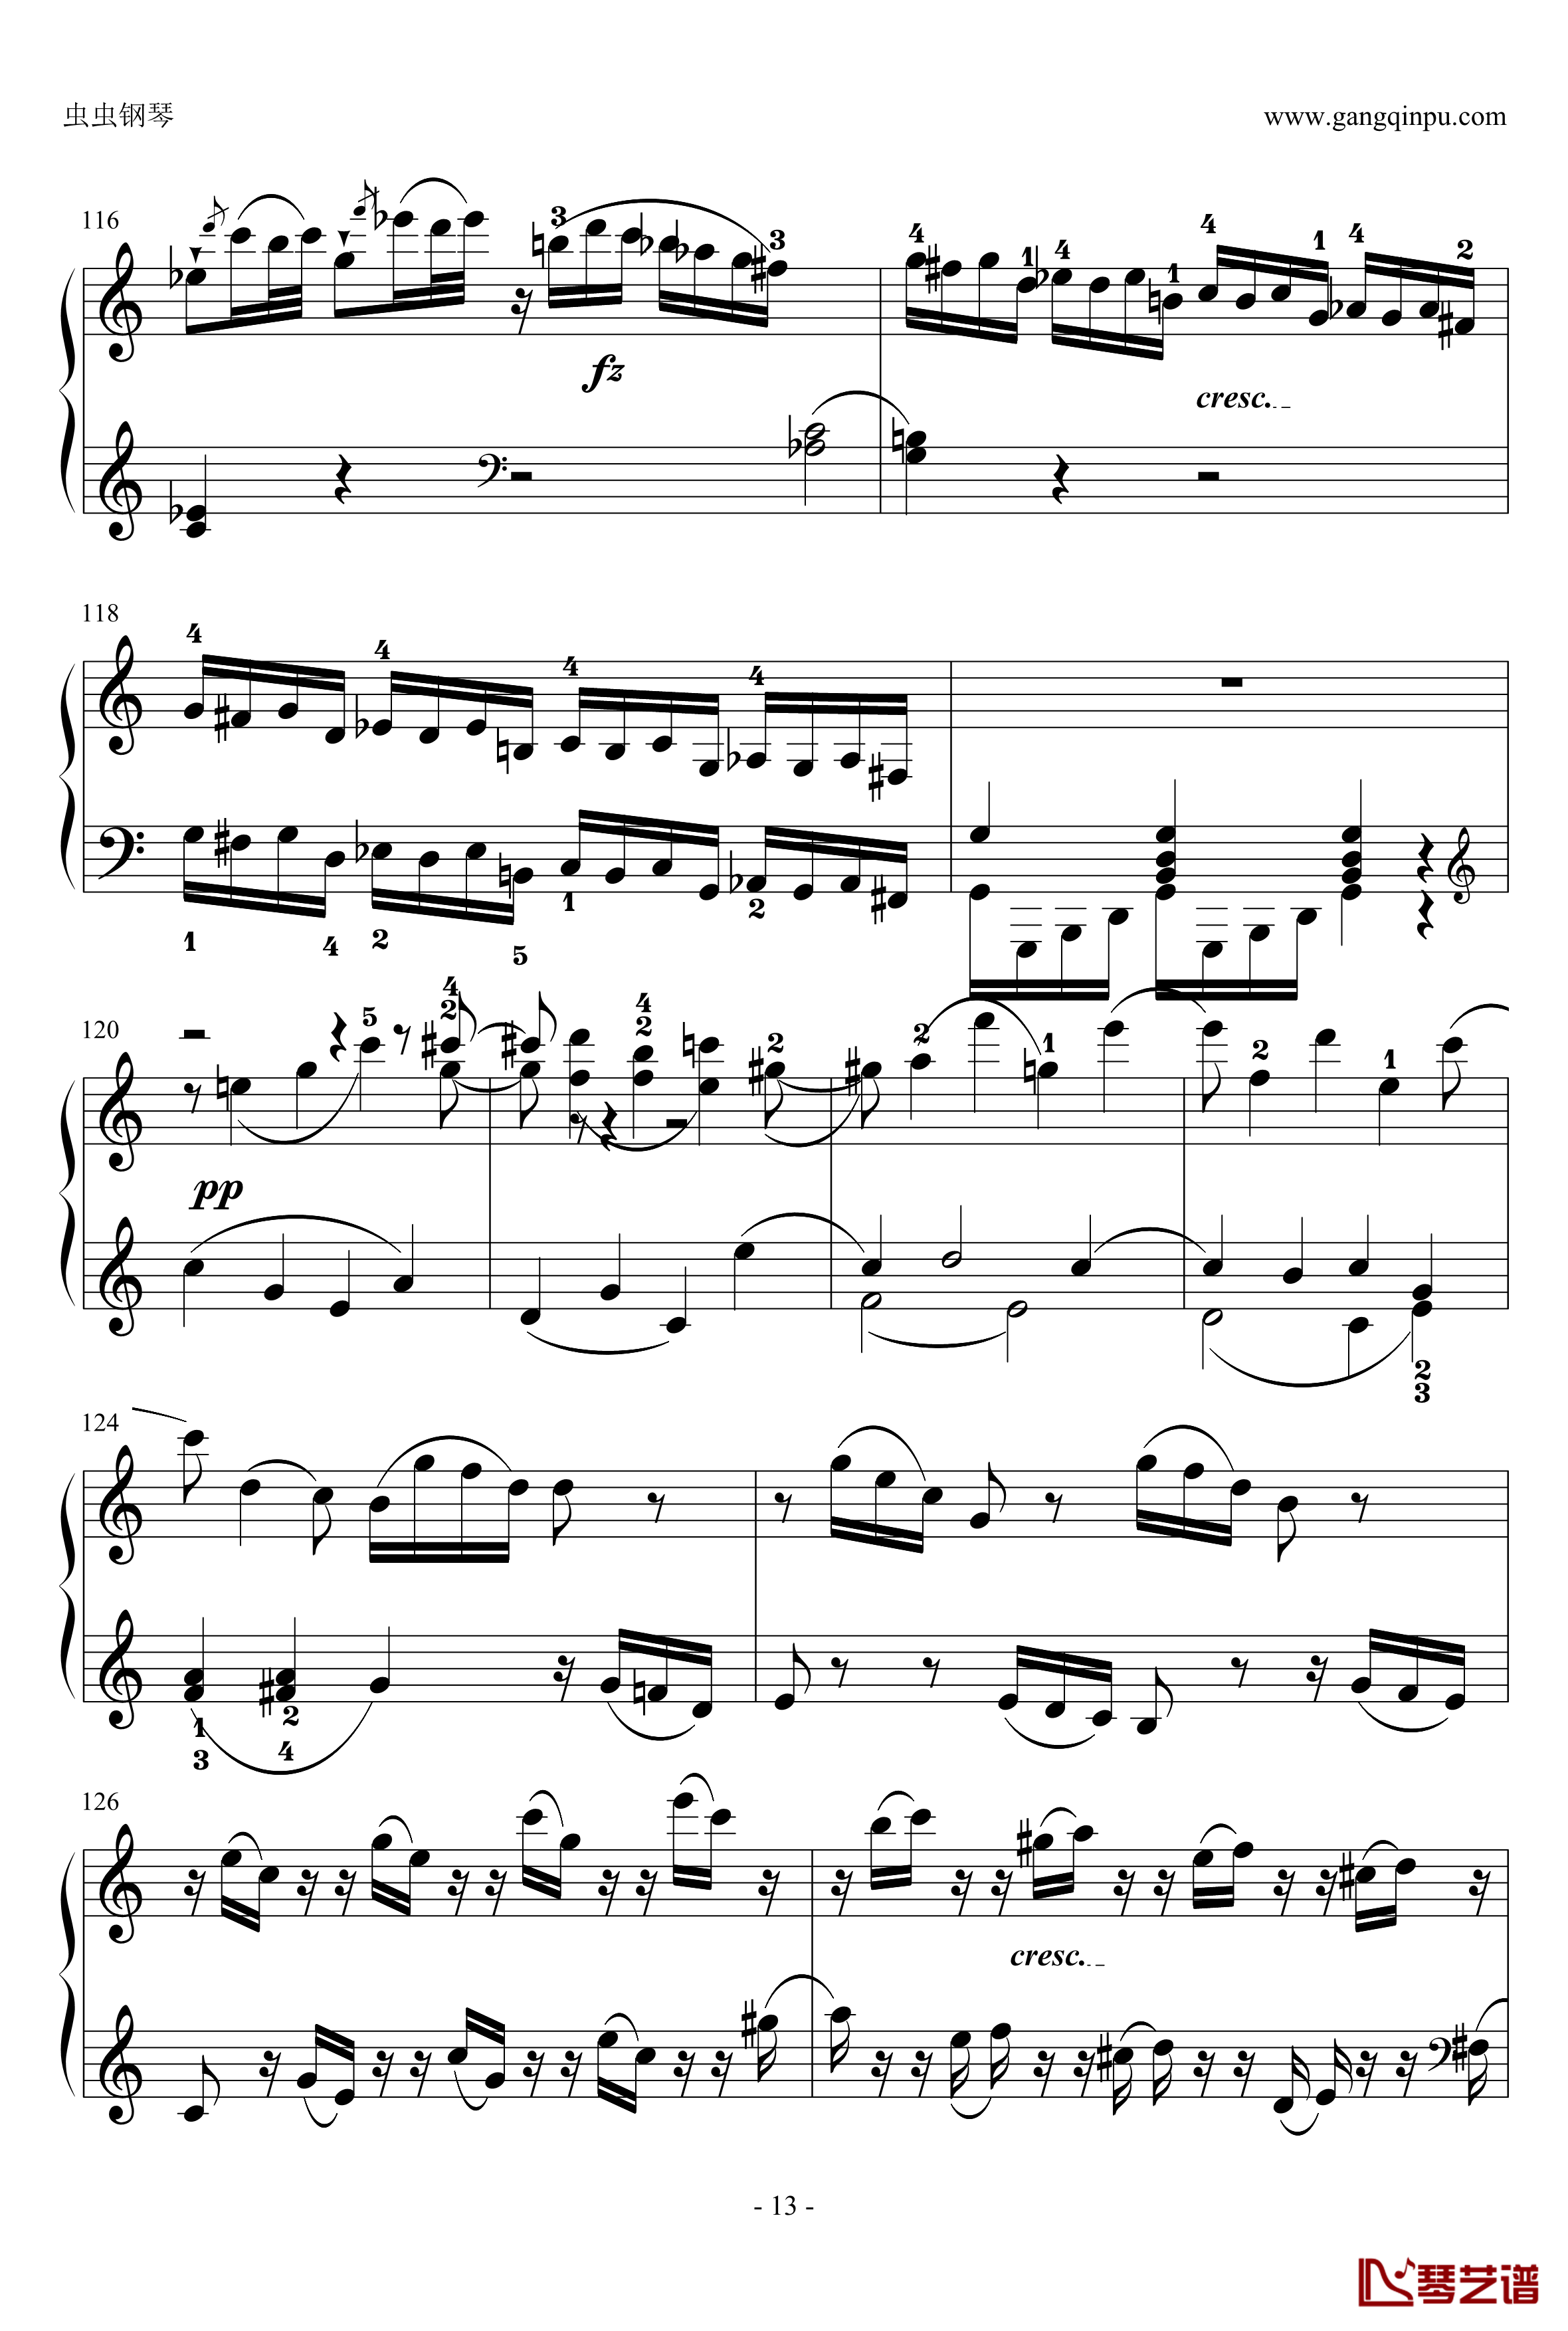 C大调奏鸣曲钢琴谱第一乐章-海顿13